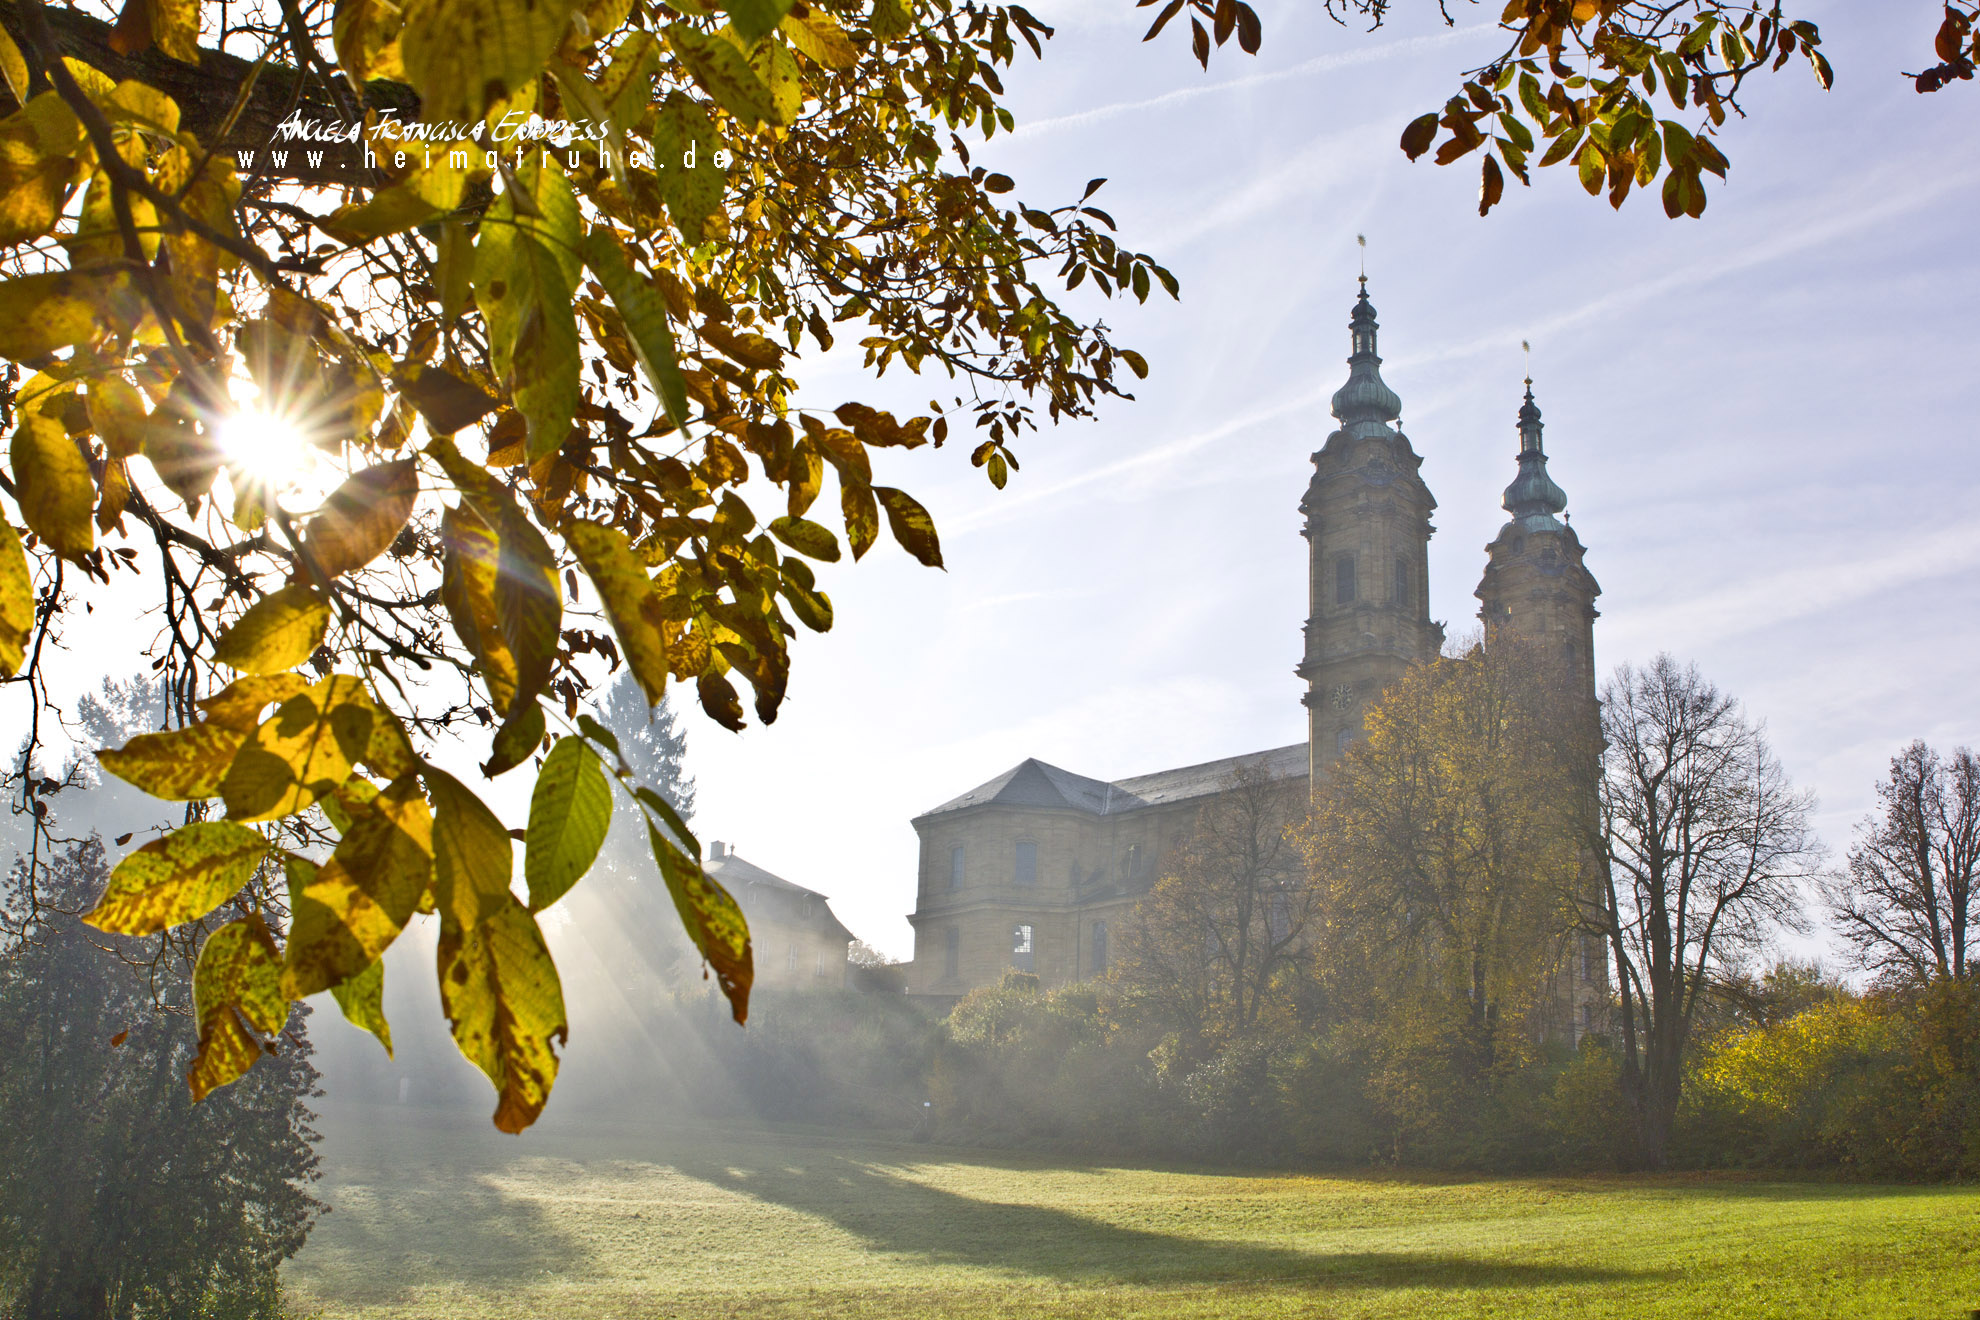 Basilika Vierzehnheiligen im Herbst mit Nebel, Sonnenlicht strahlt durch goldene Walnussblätter